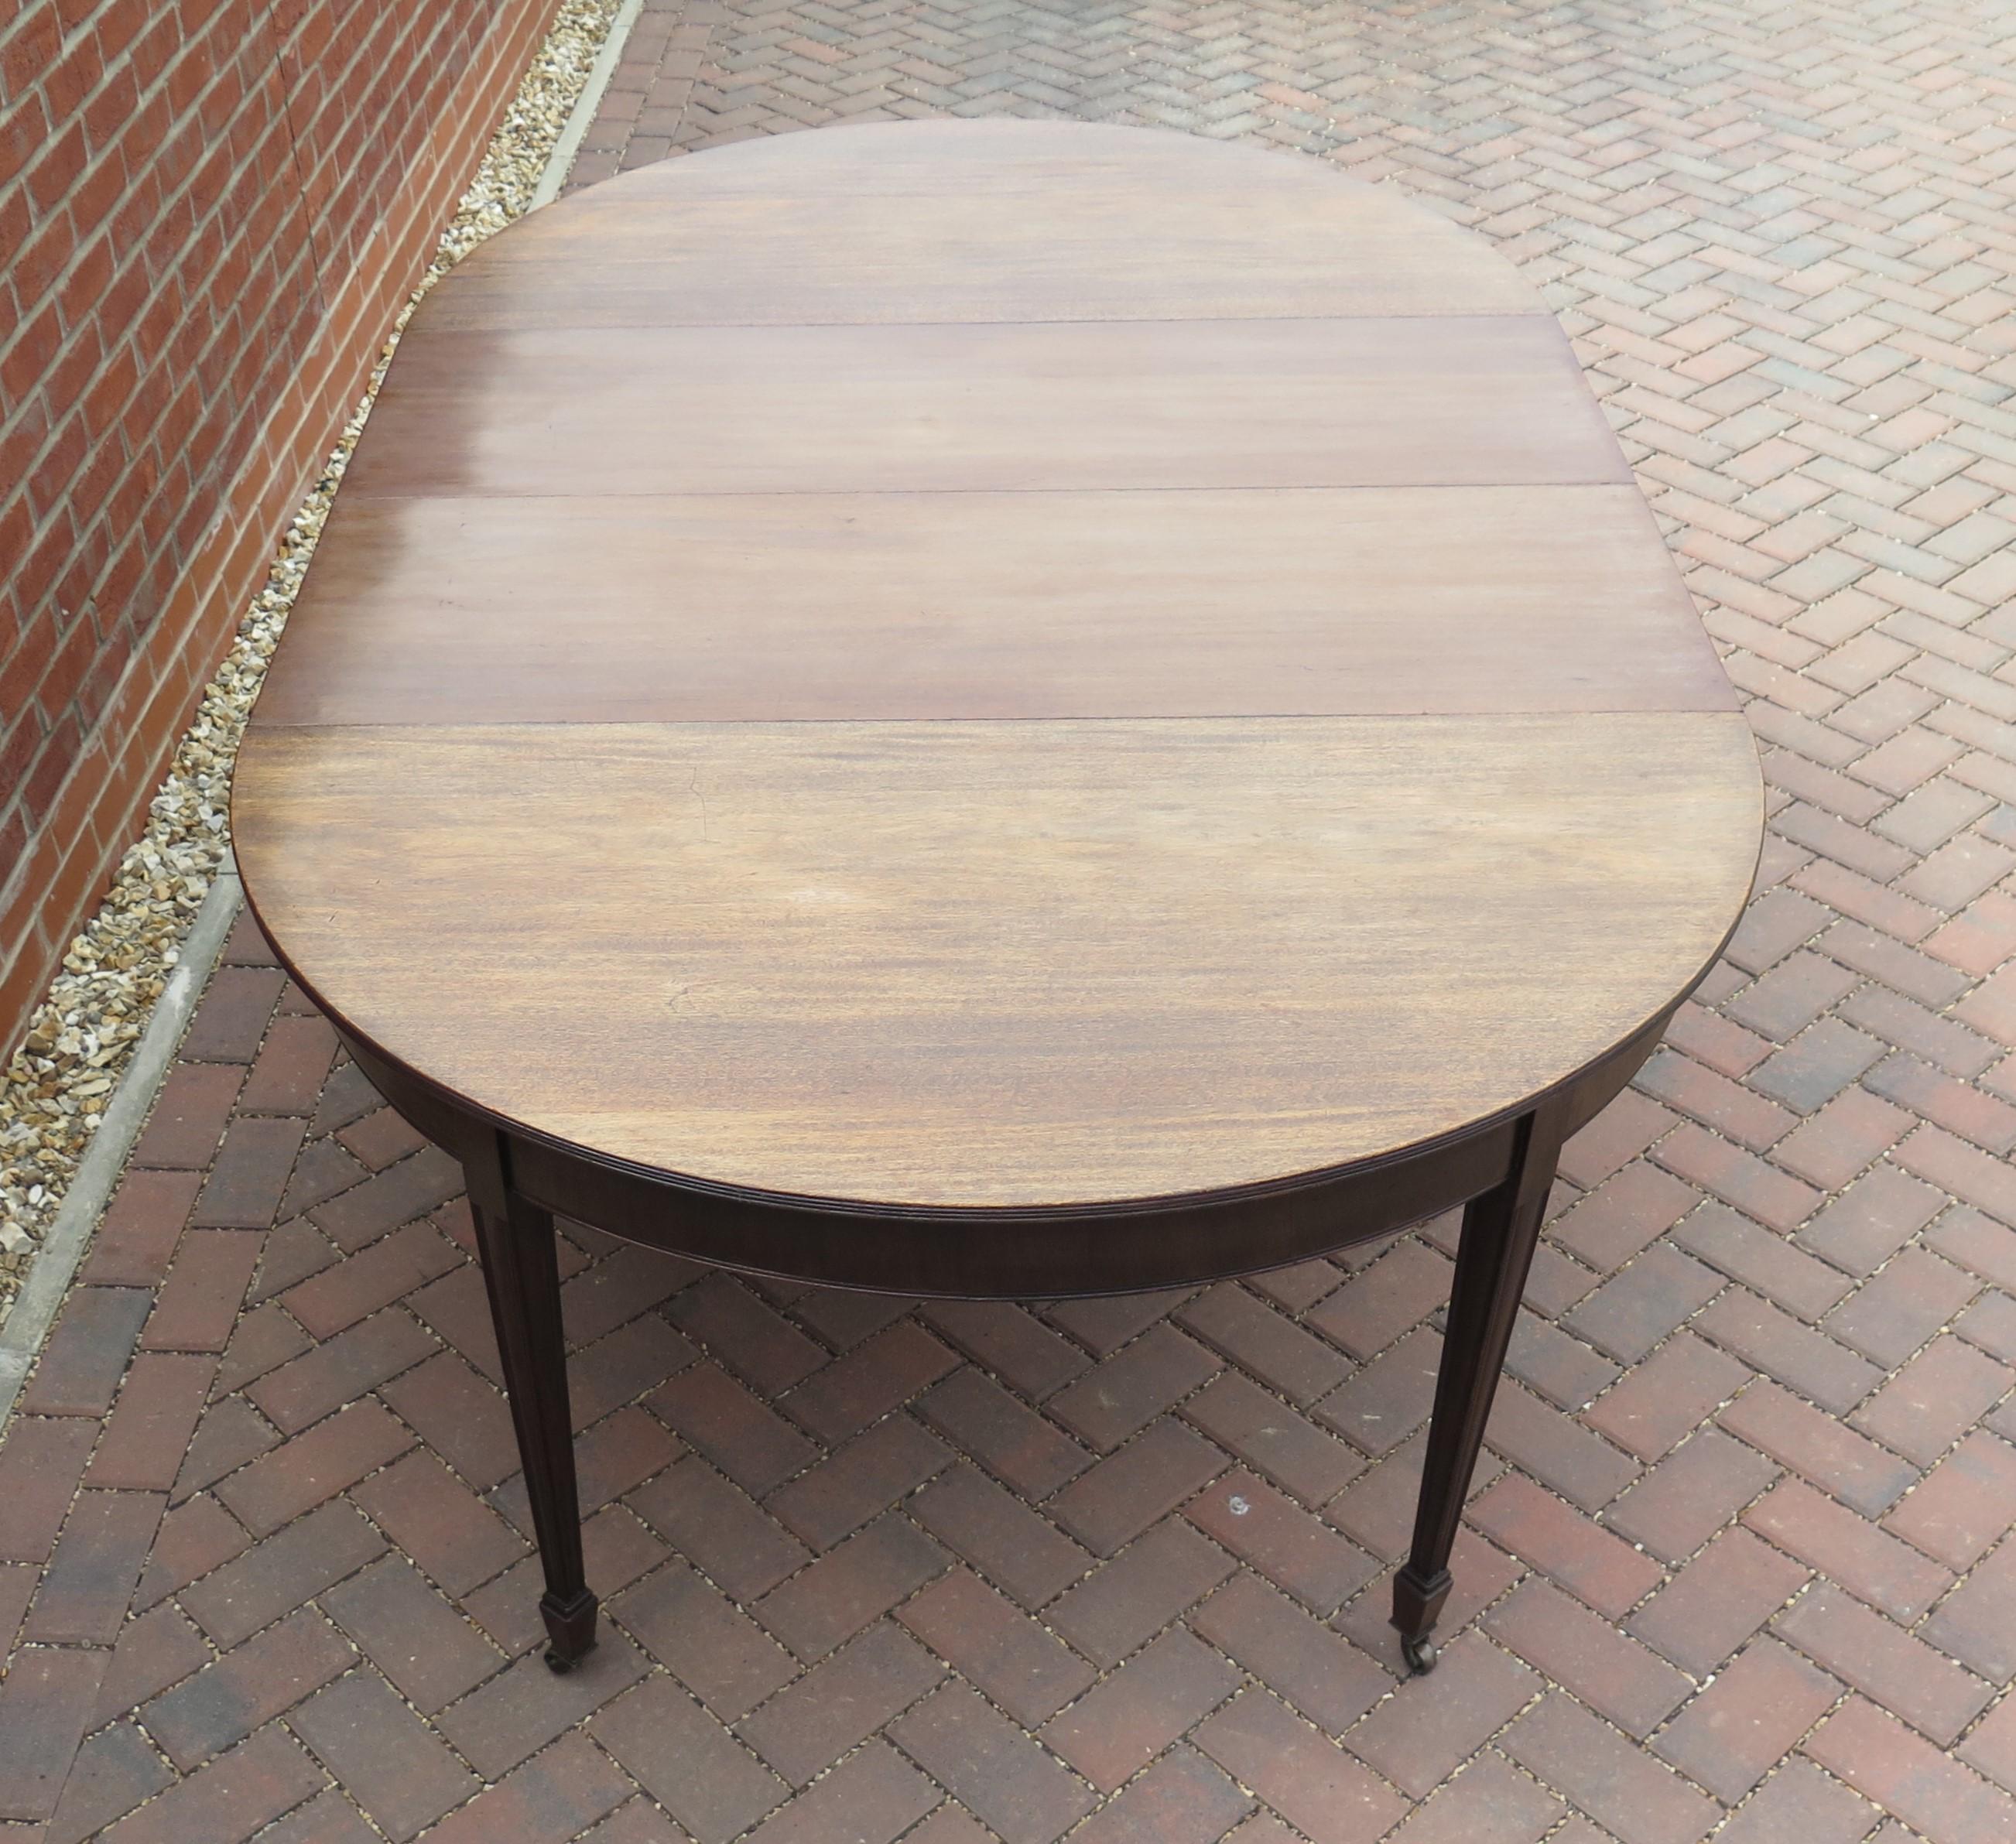 Il s'agit d'une table à manger à rallonge anglaise de haute qualité, fabriquée en bois dur, de l'époque de George III, à la fin du 18e siècle, vers 1785.

Cette table peut accueillir 10 personnes en raison de sa grande largeur de plus de 54 pouces